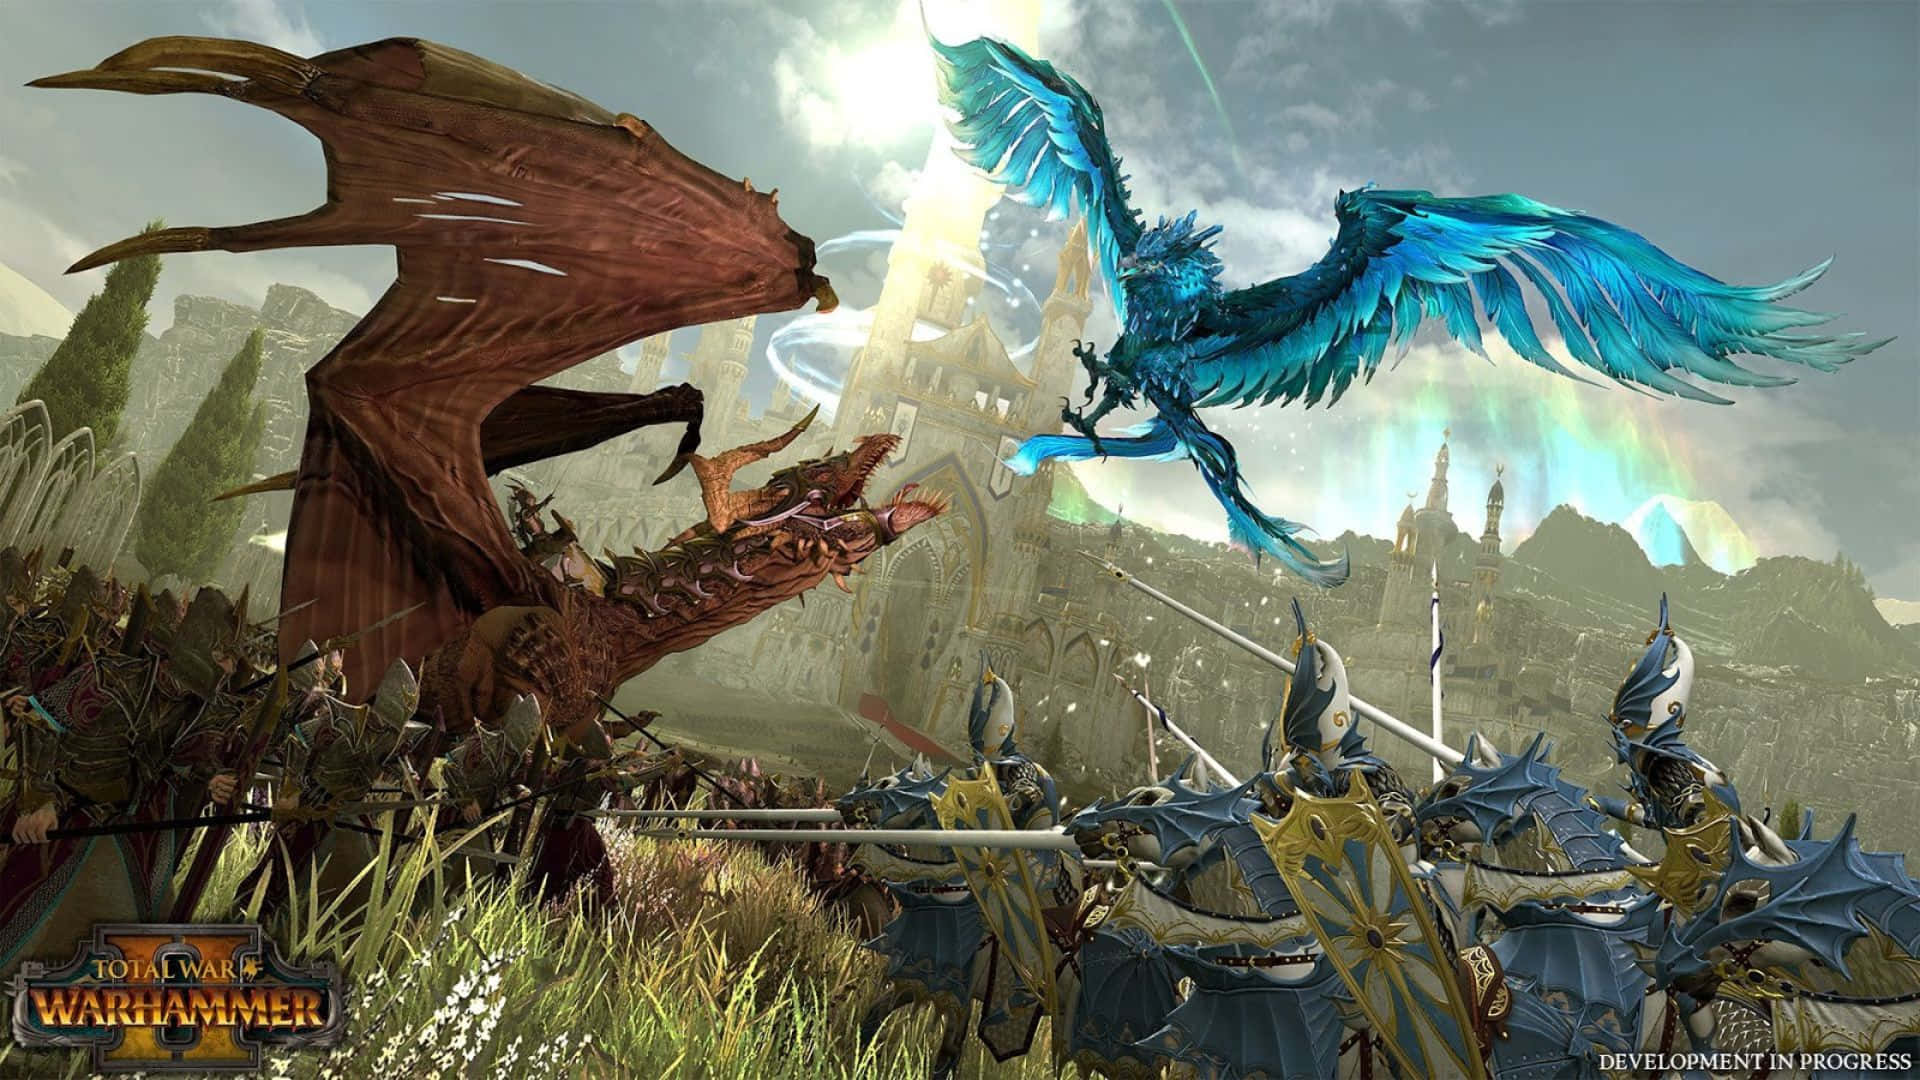 "A Hyper-Detailed World Awaits: HD Total War: Warhammer II"